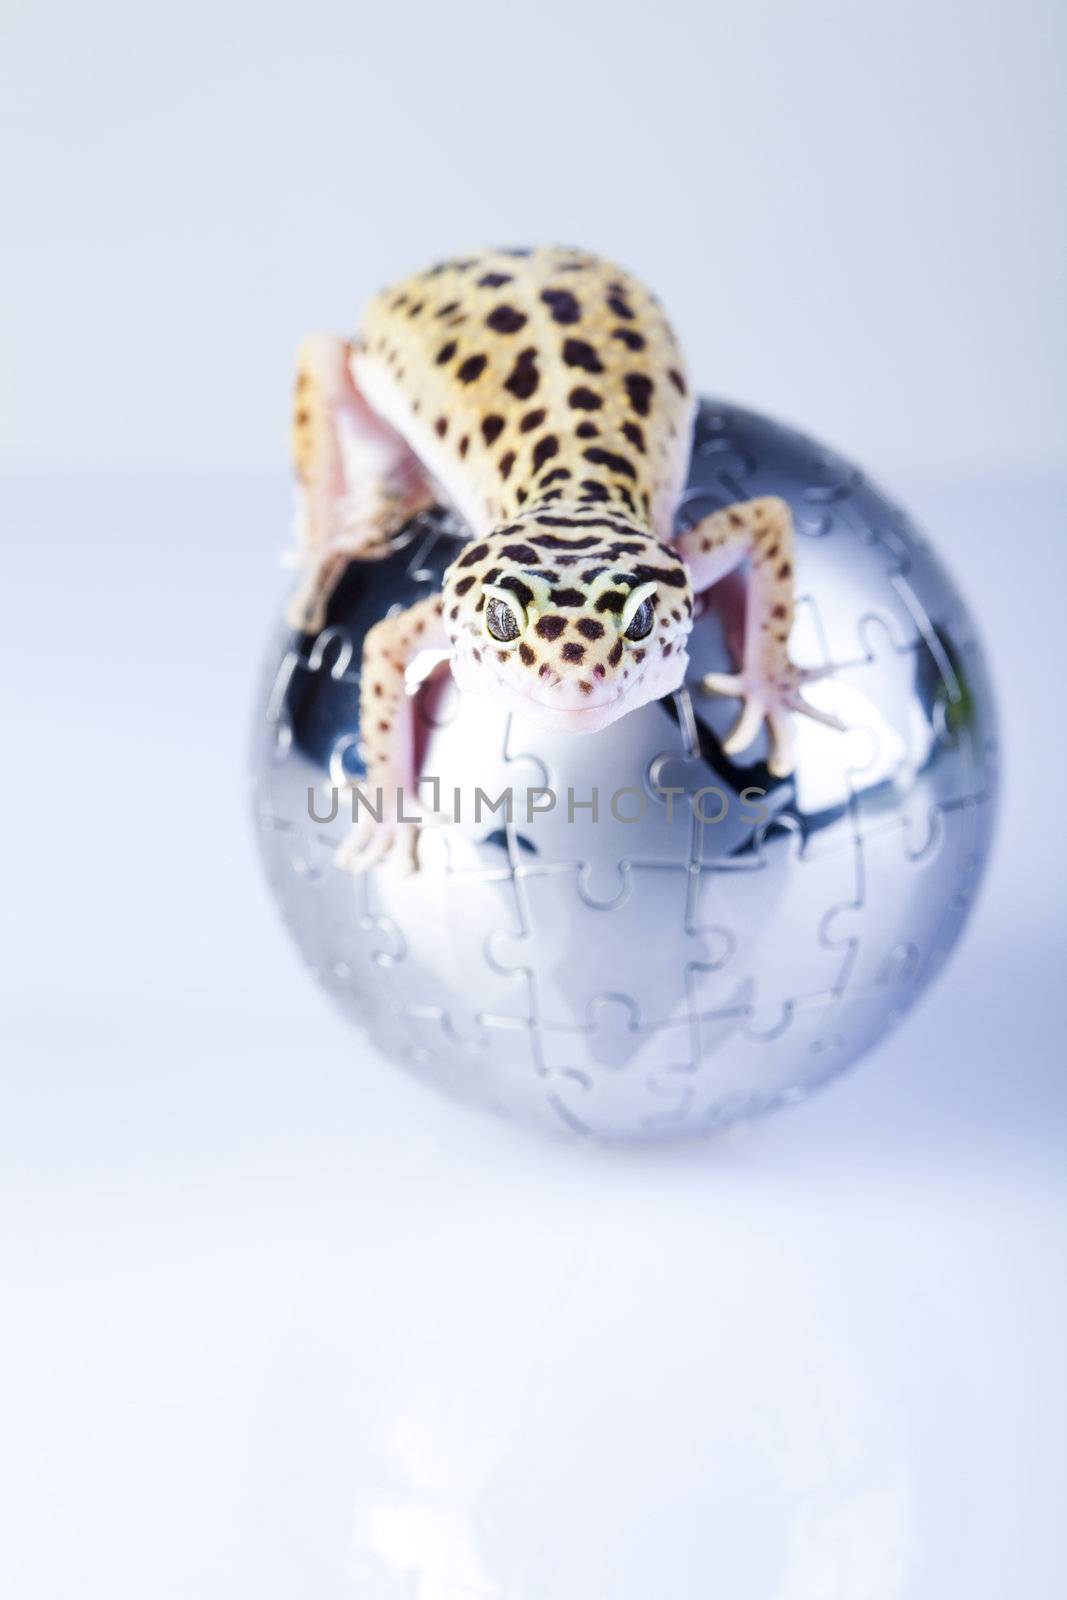 Gecko in globe by JanPietruszka